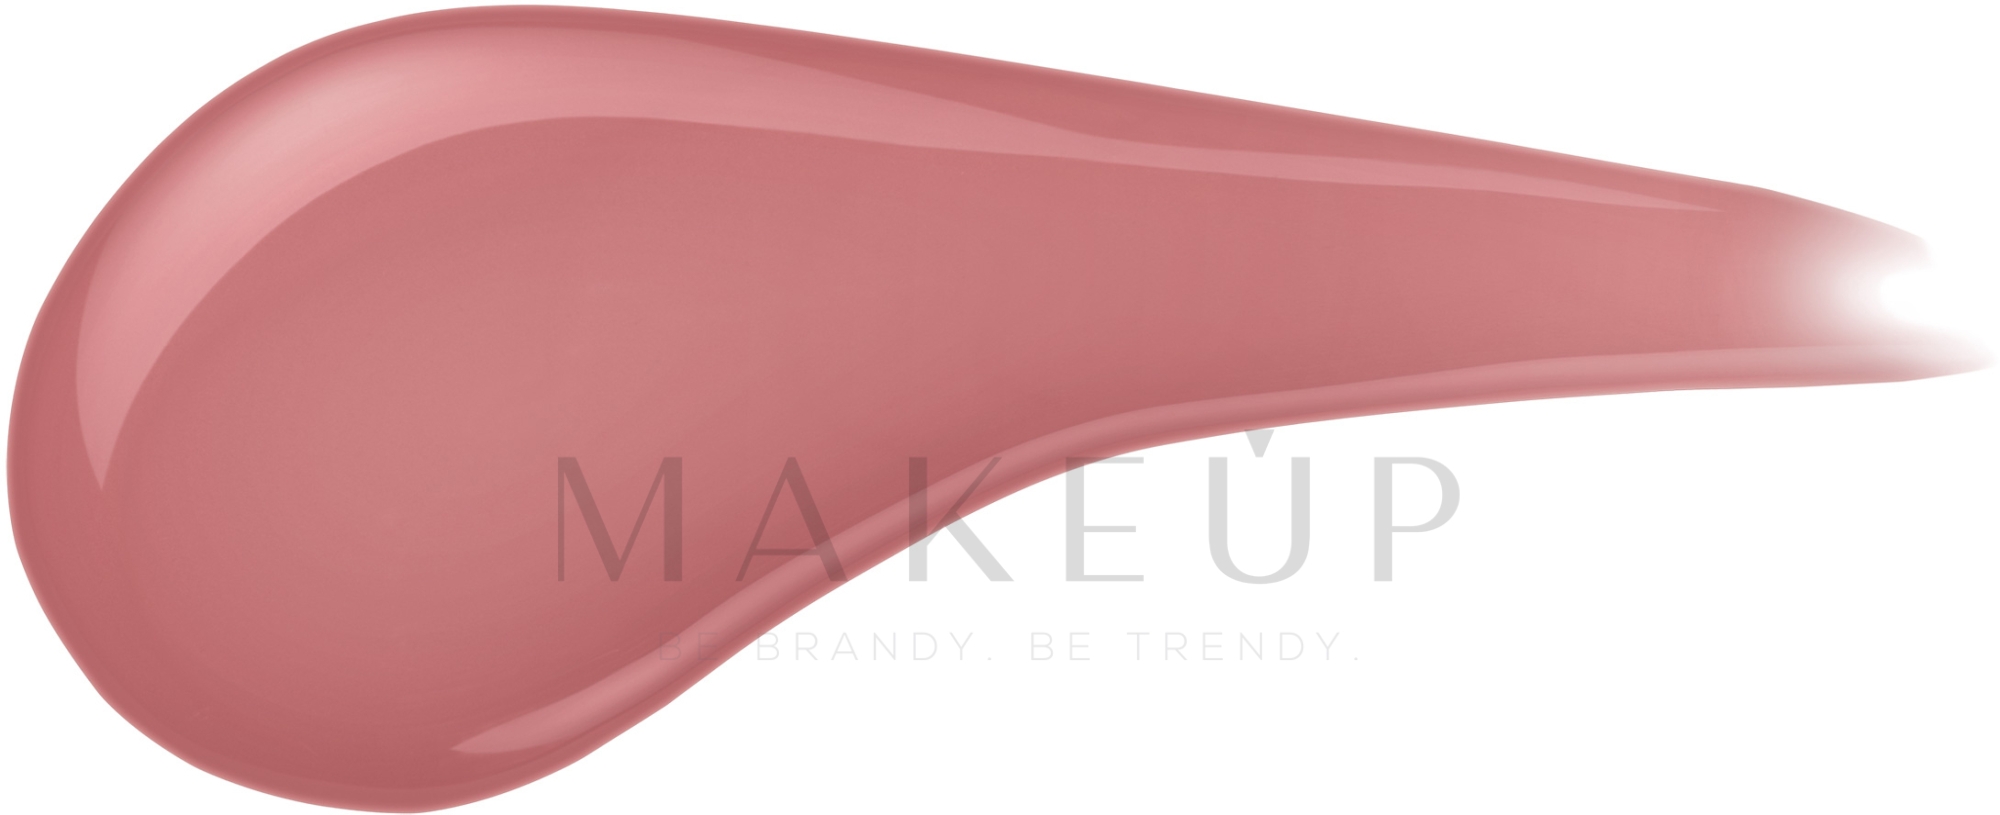 Lippenstift - Max Factor Lipfinity — Foto 1 - Pearly Nude